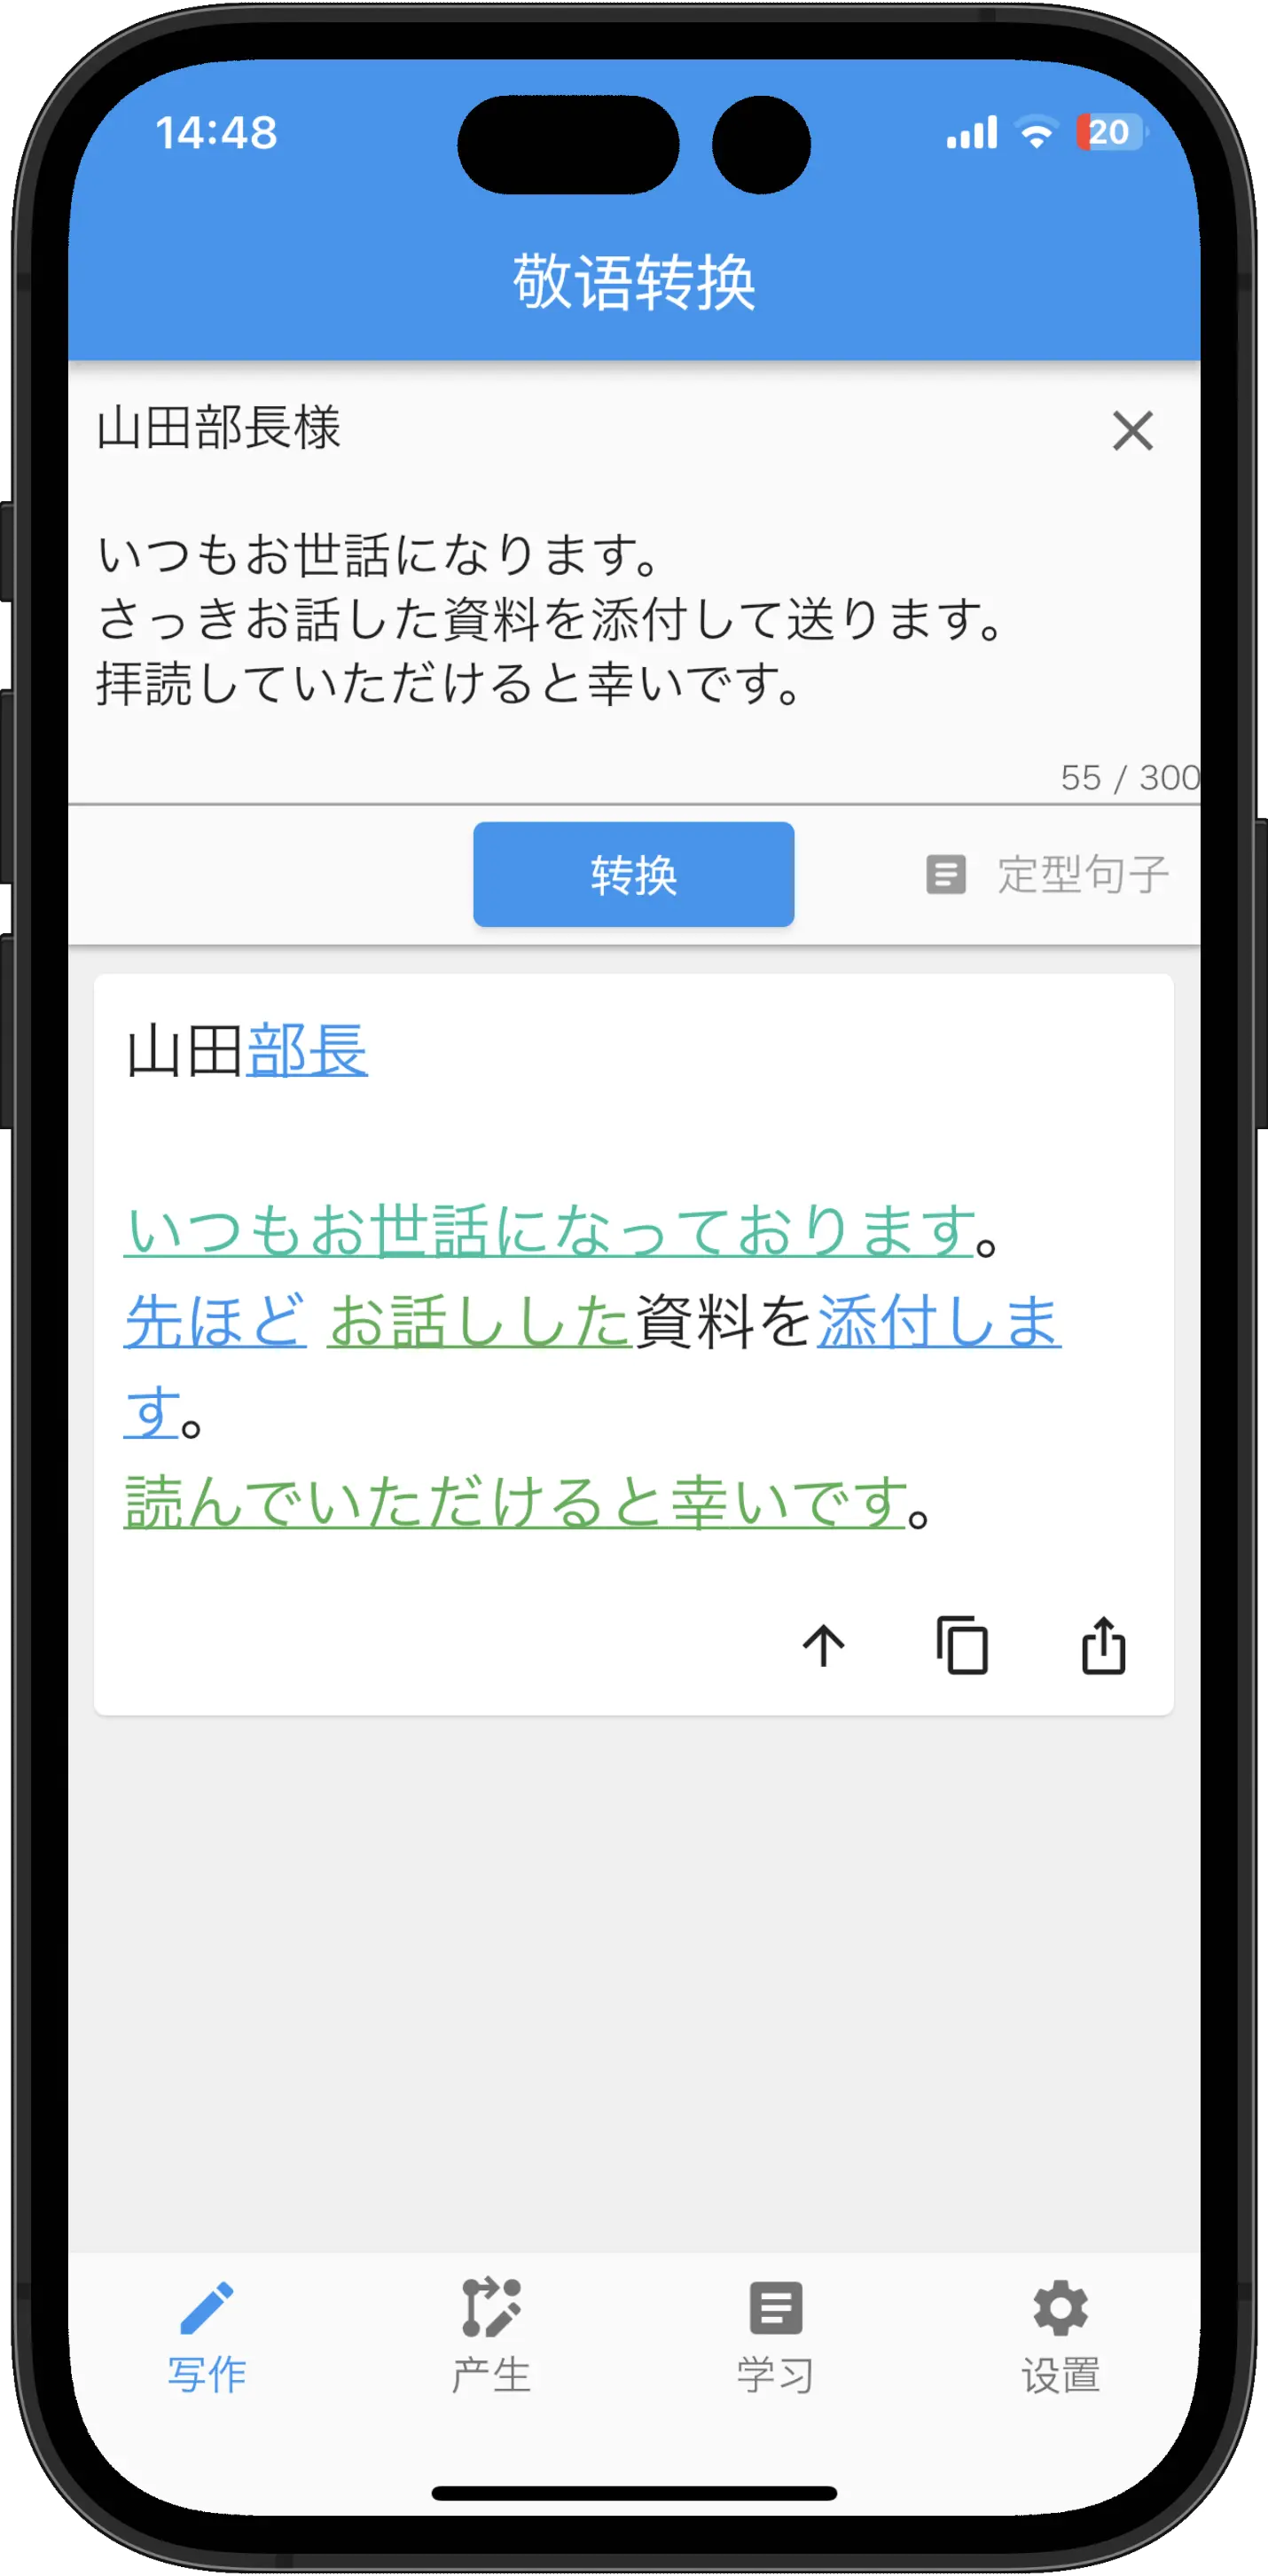 用敬语的转换App应用转换“山田部長様 いつもお世話になります。さっきお話した資料を添付しえt送ります。拝読していただけると幸いです。”